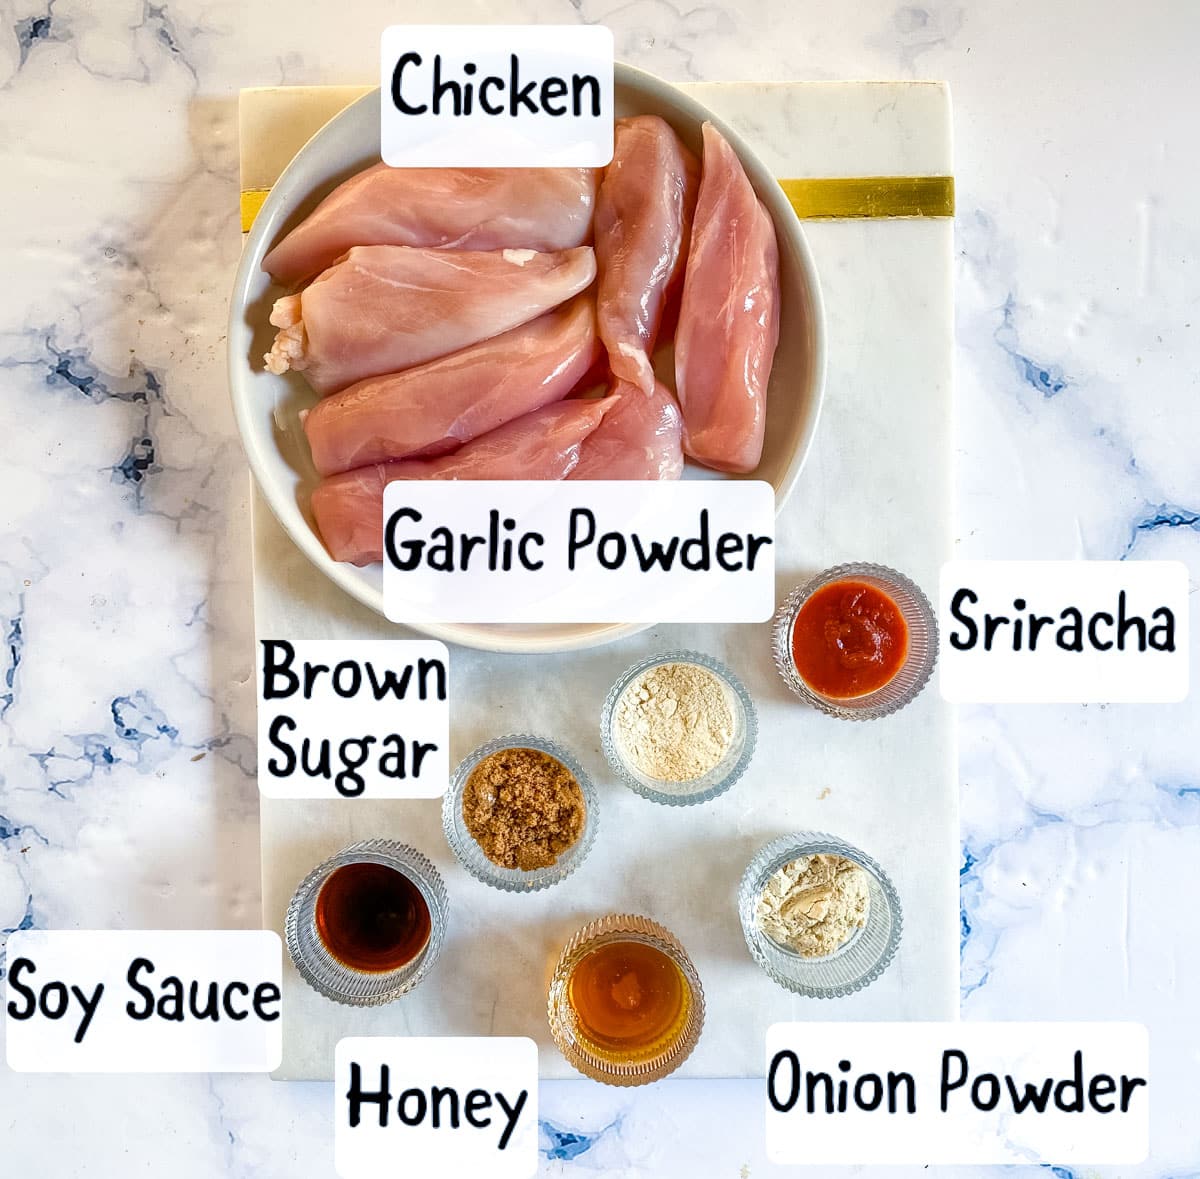 Ingredients for grilled chicken steak recipe